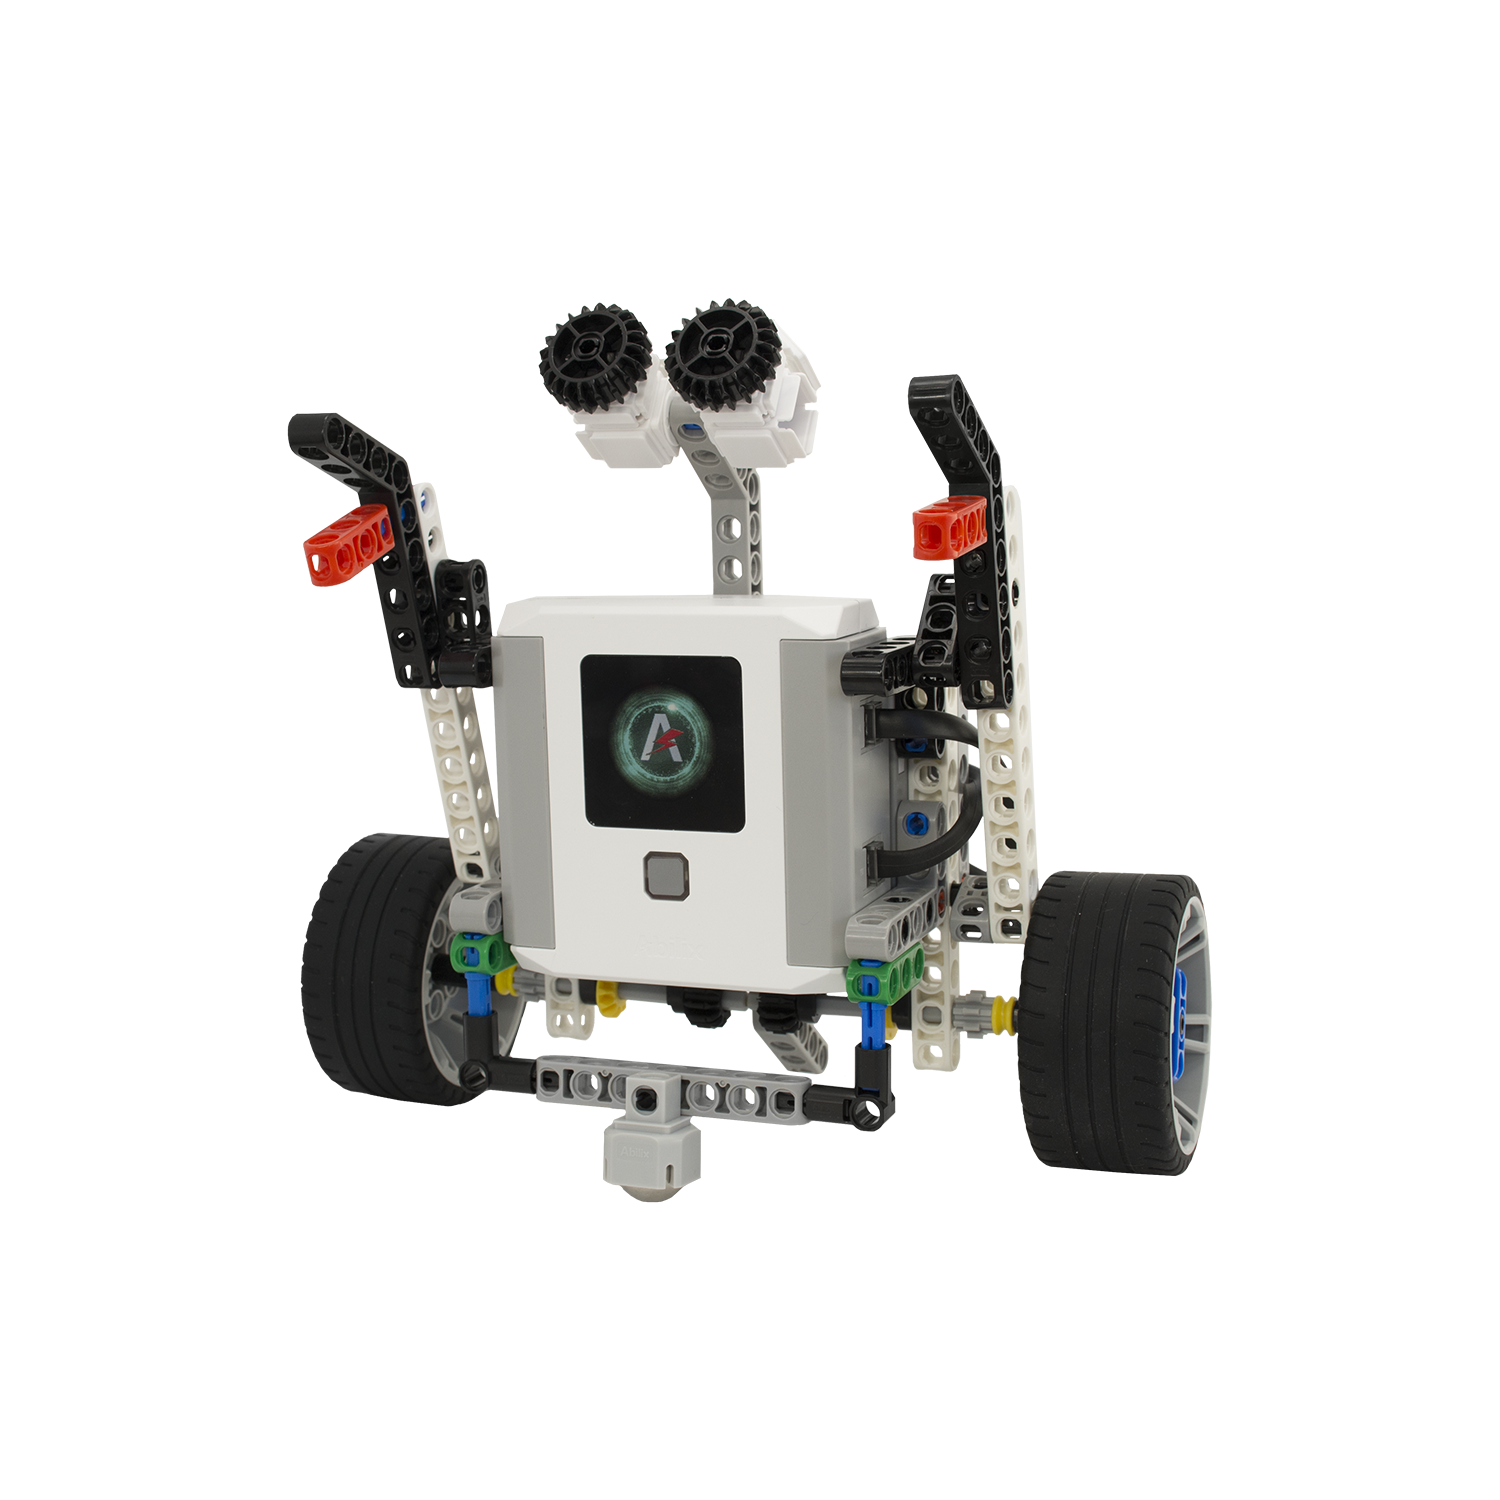 Abilix Krypton 0 - STEM Education Robot Kit- 405+ Components 17+